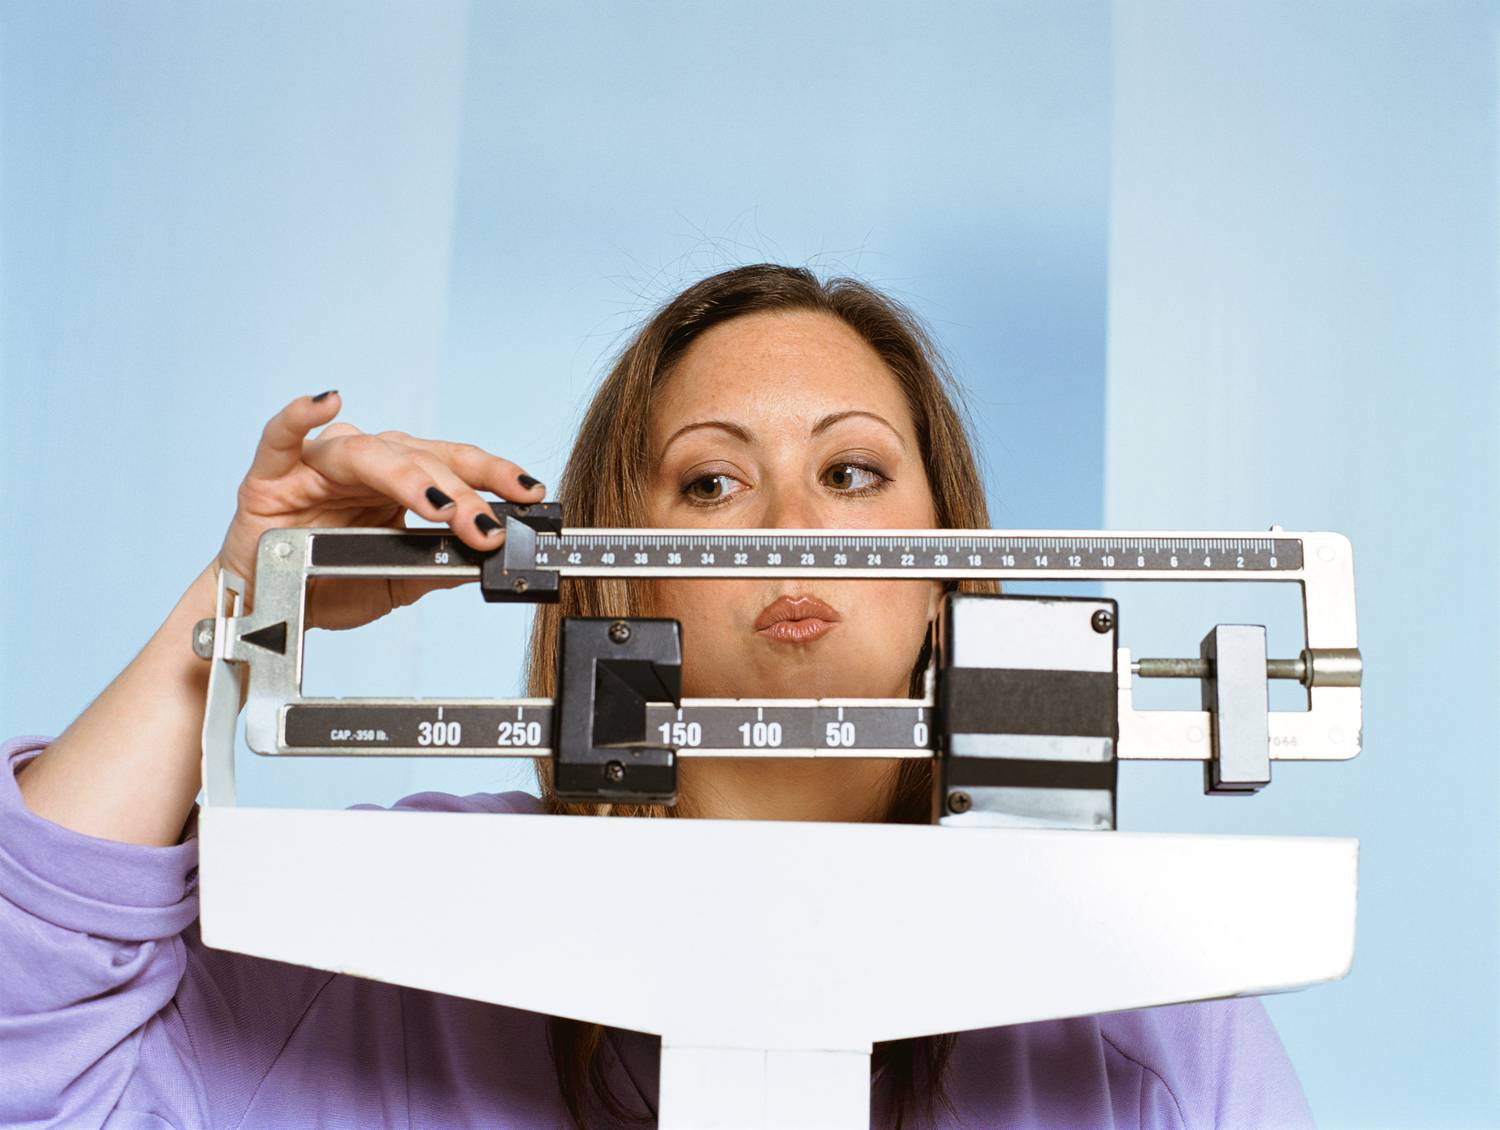 hogyan lehet megszabadulni a cukoréhségtől 60 napos súlycsökkenési átalakulások